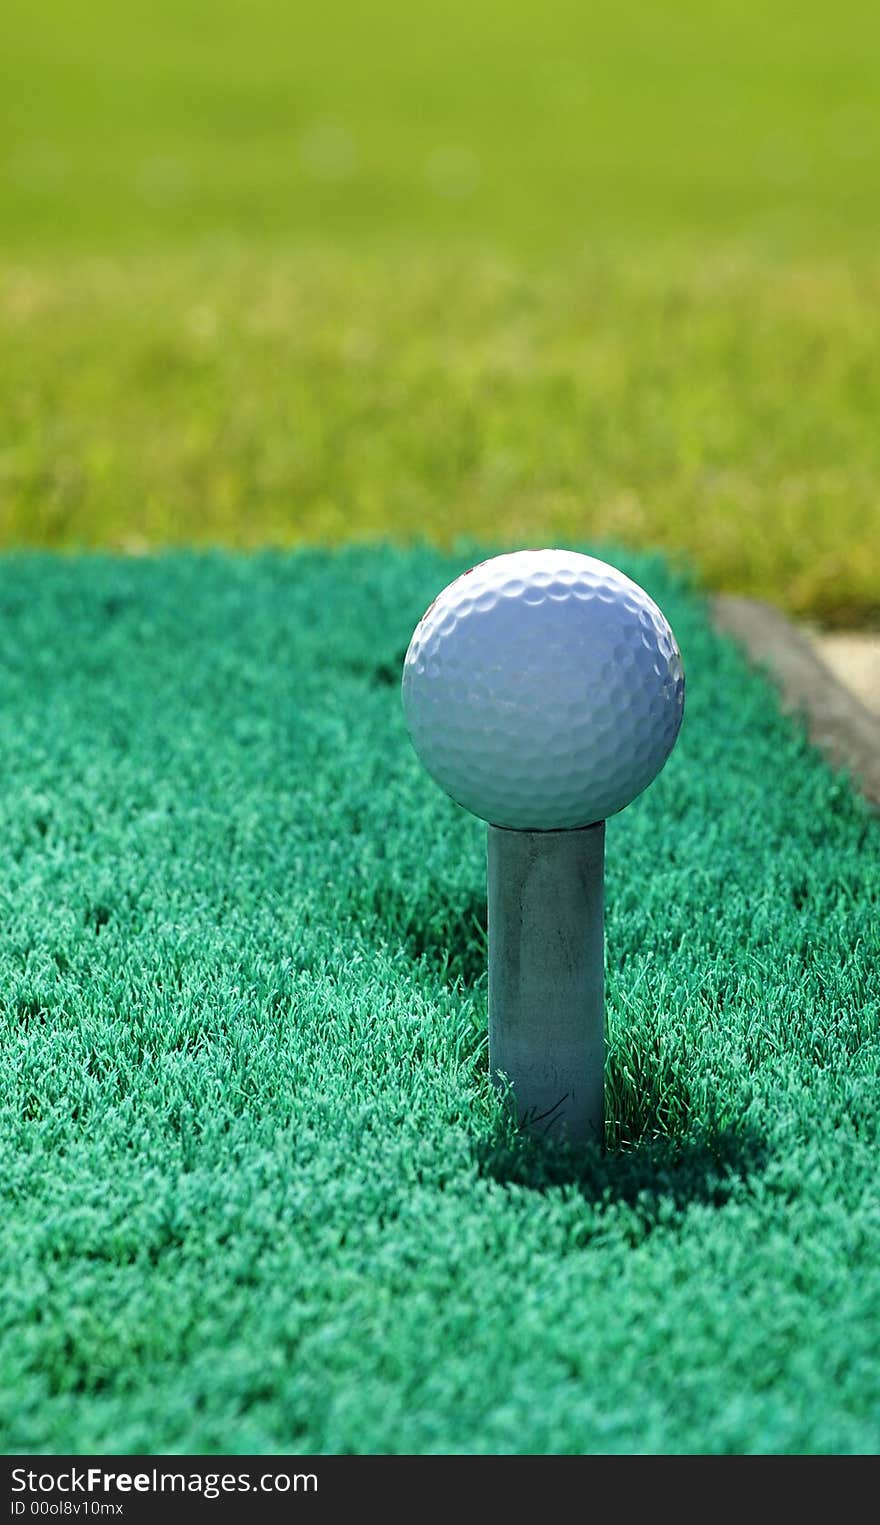 A golf ball on a practice tee